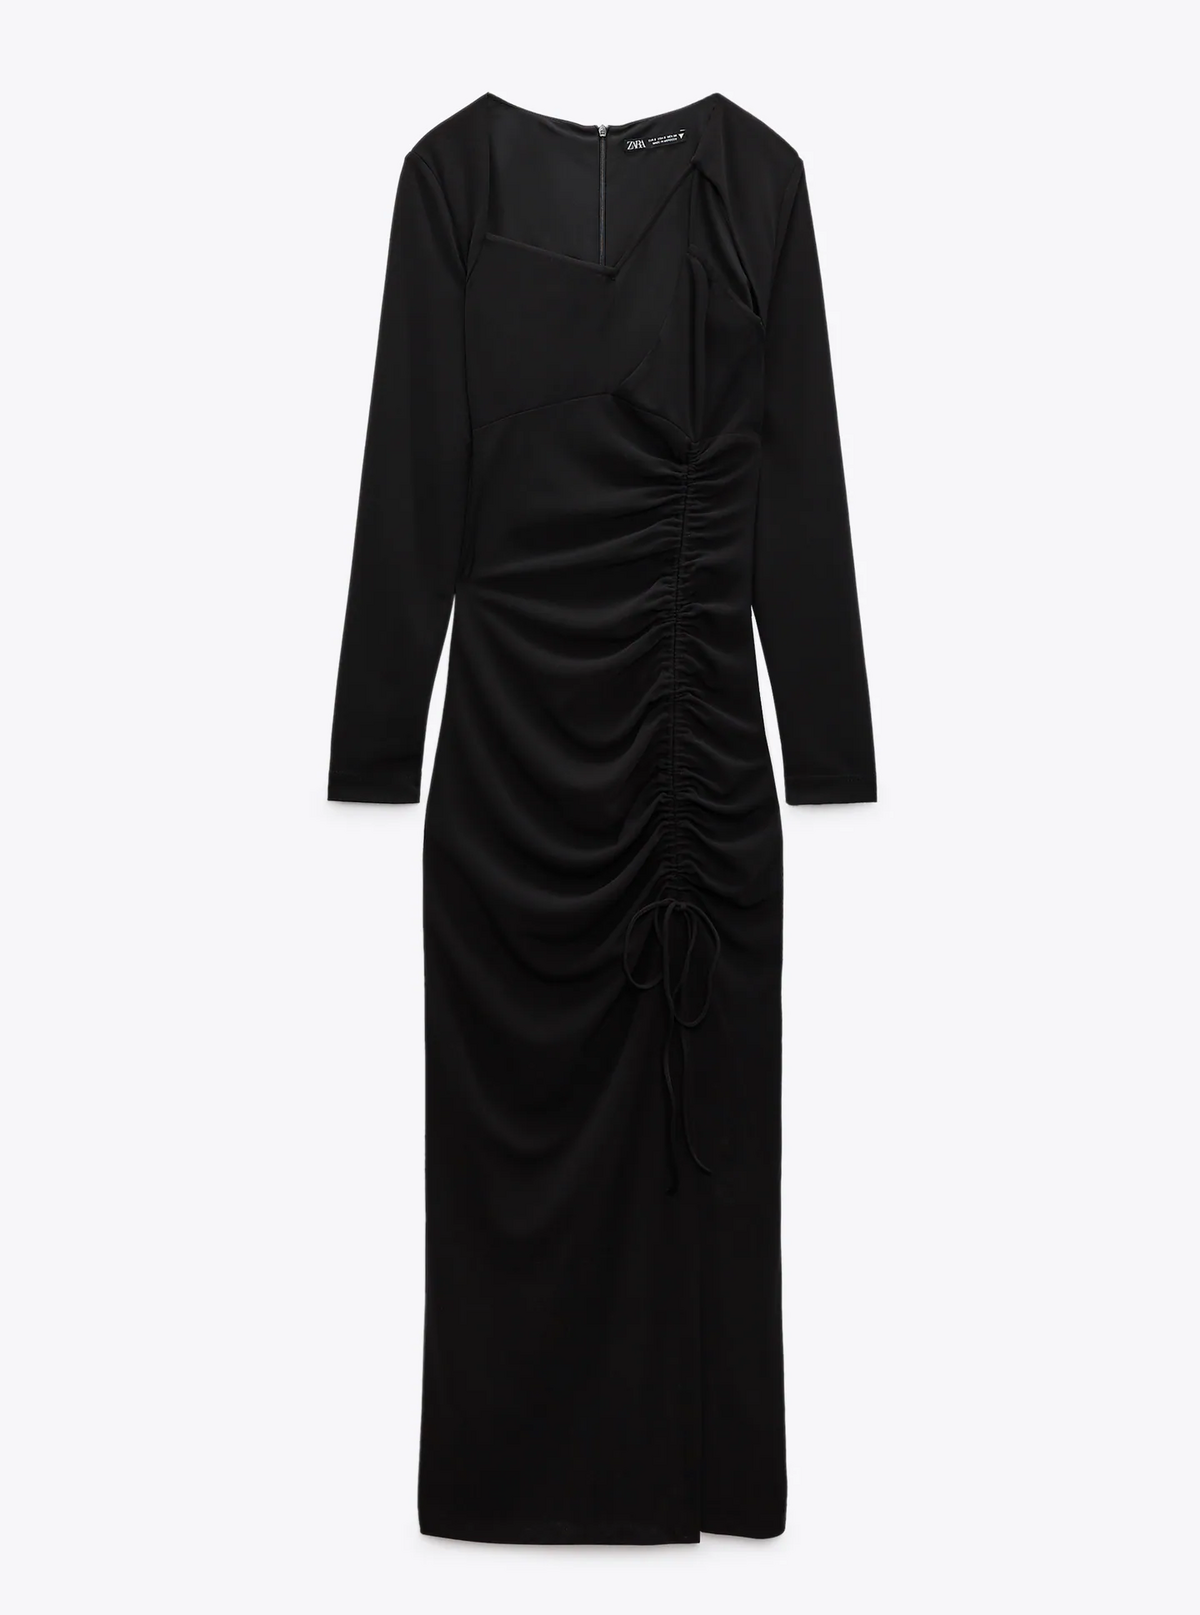 Vestidos negros: Zara tiene las 12 versiones de este básico de armario que  son tendencia este otoño